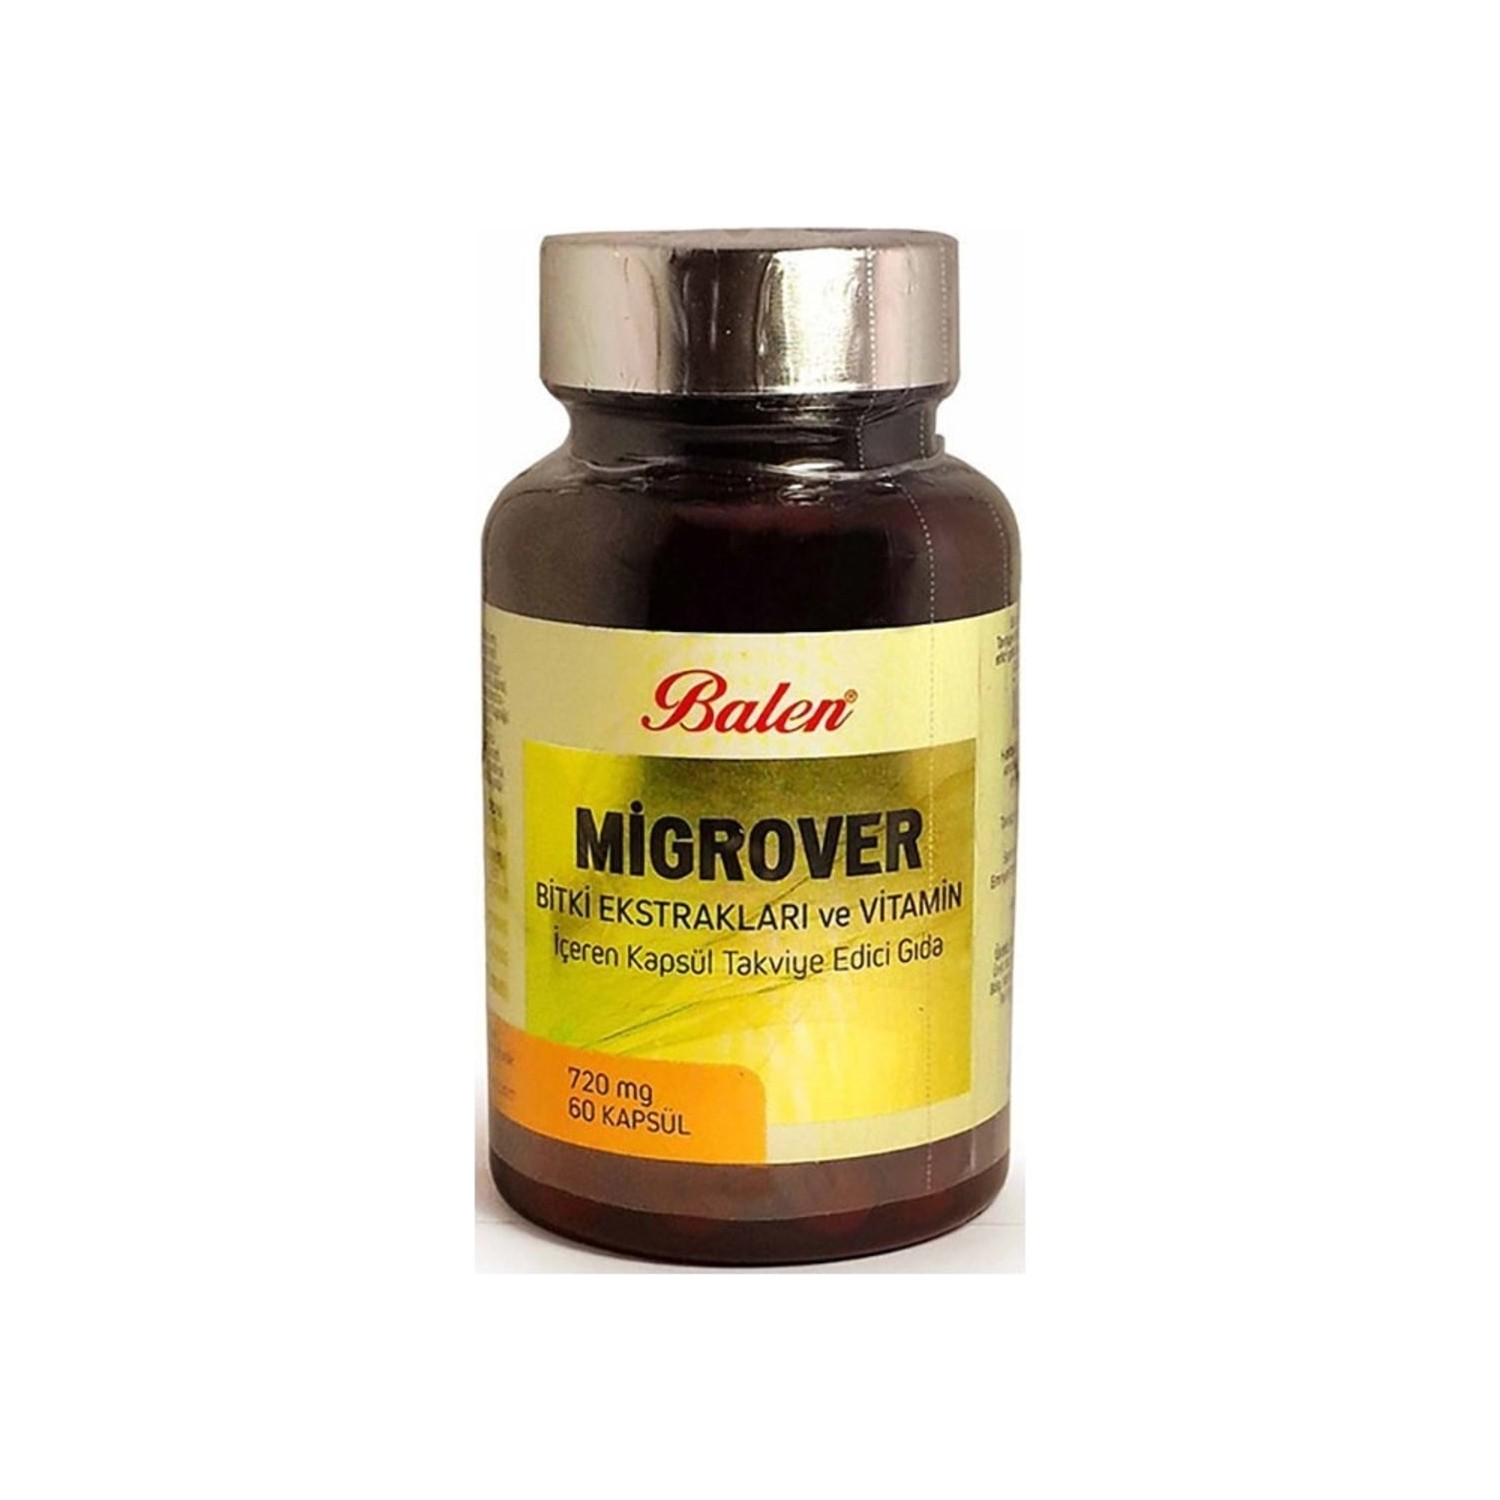 Капсулы Balen Migrover, содержащие растительные экстракты и витамины, 60 капсул, 720 мг valerian extract standardized 60 vegetarian capsules